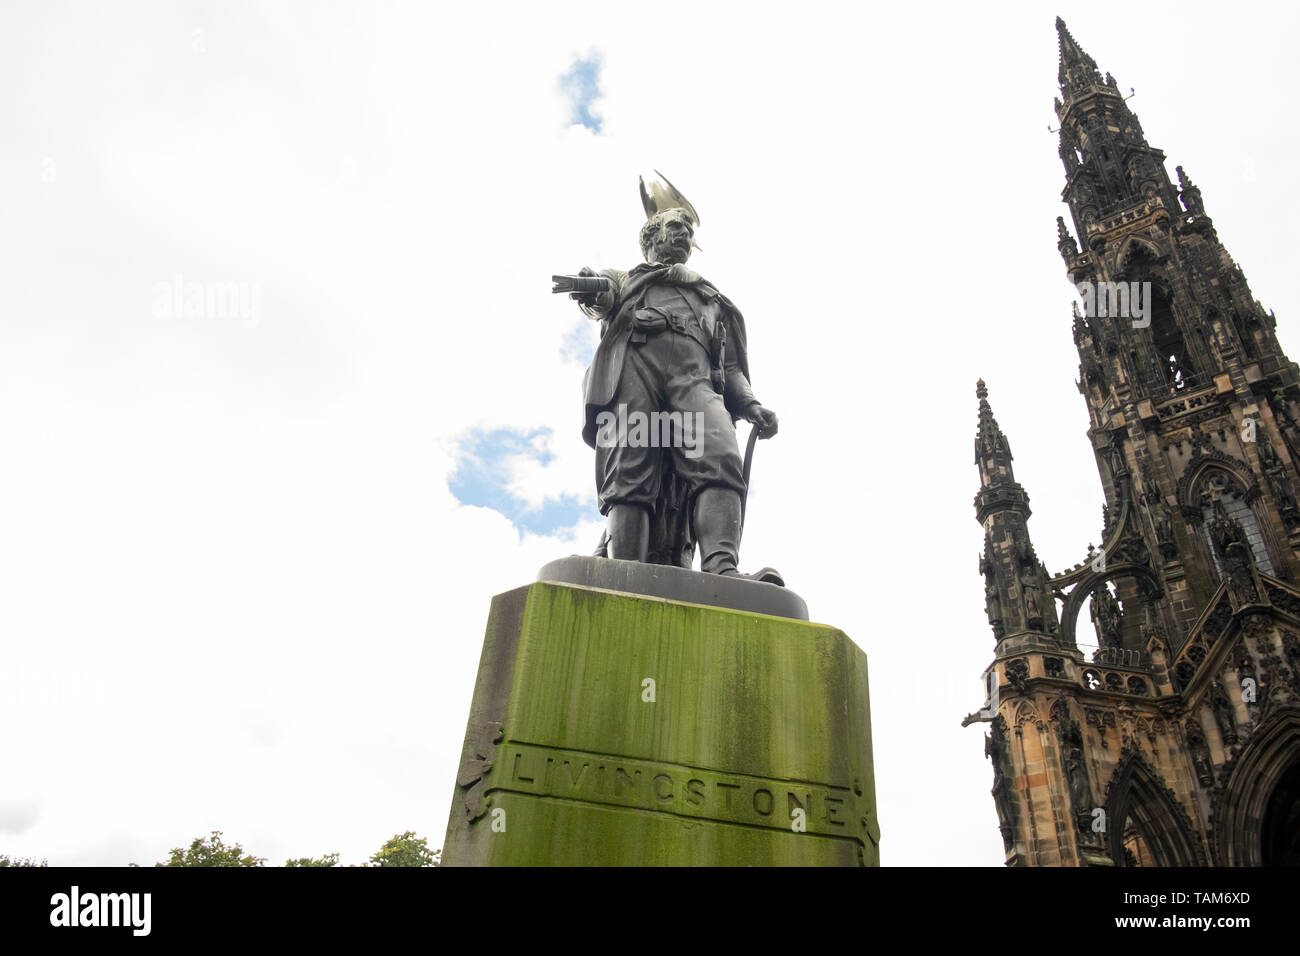 Statue des David Livingstone mit Möwe auf dem Kopf, im Osten die Princes Street Gardens, das Stadtzentrum von Edinburgh, Schottland, Großbritannien Stockfoto